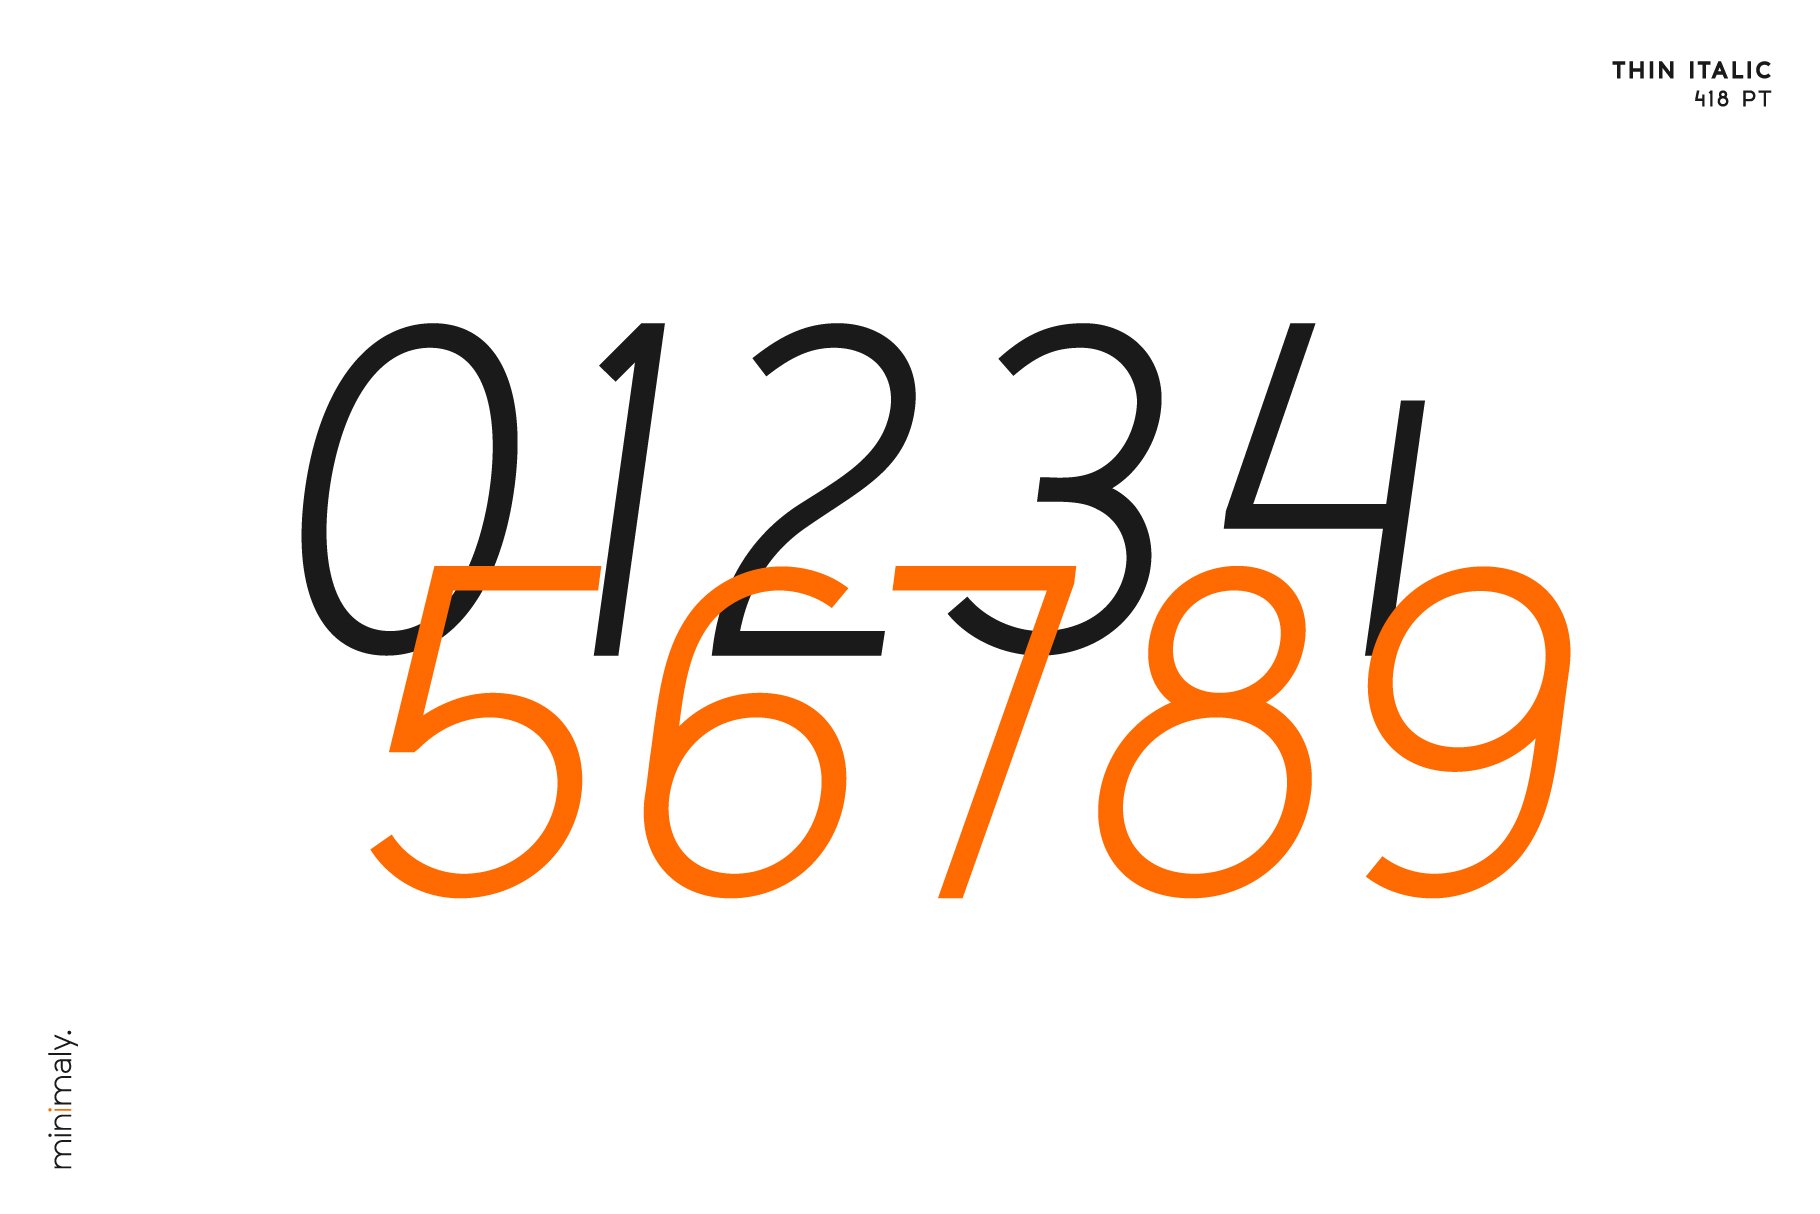 Thin italic numbers option of the Minamaly sans serif.